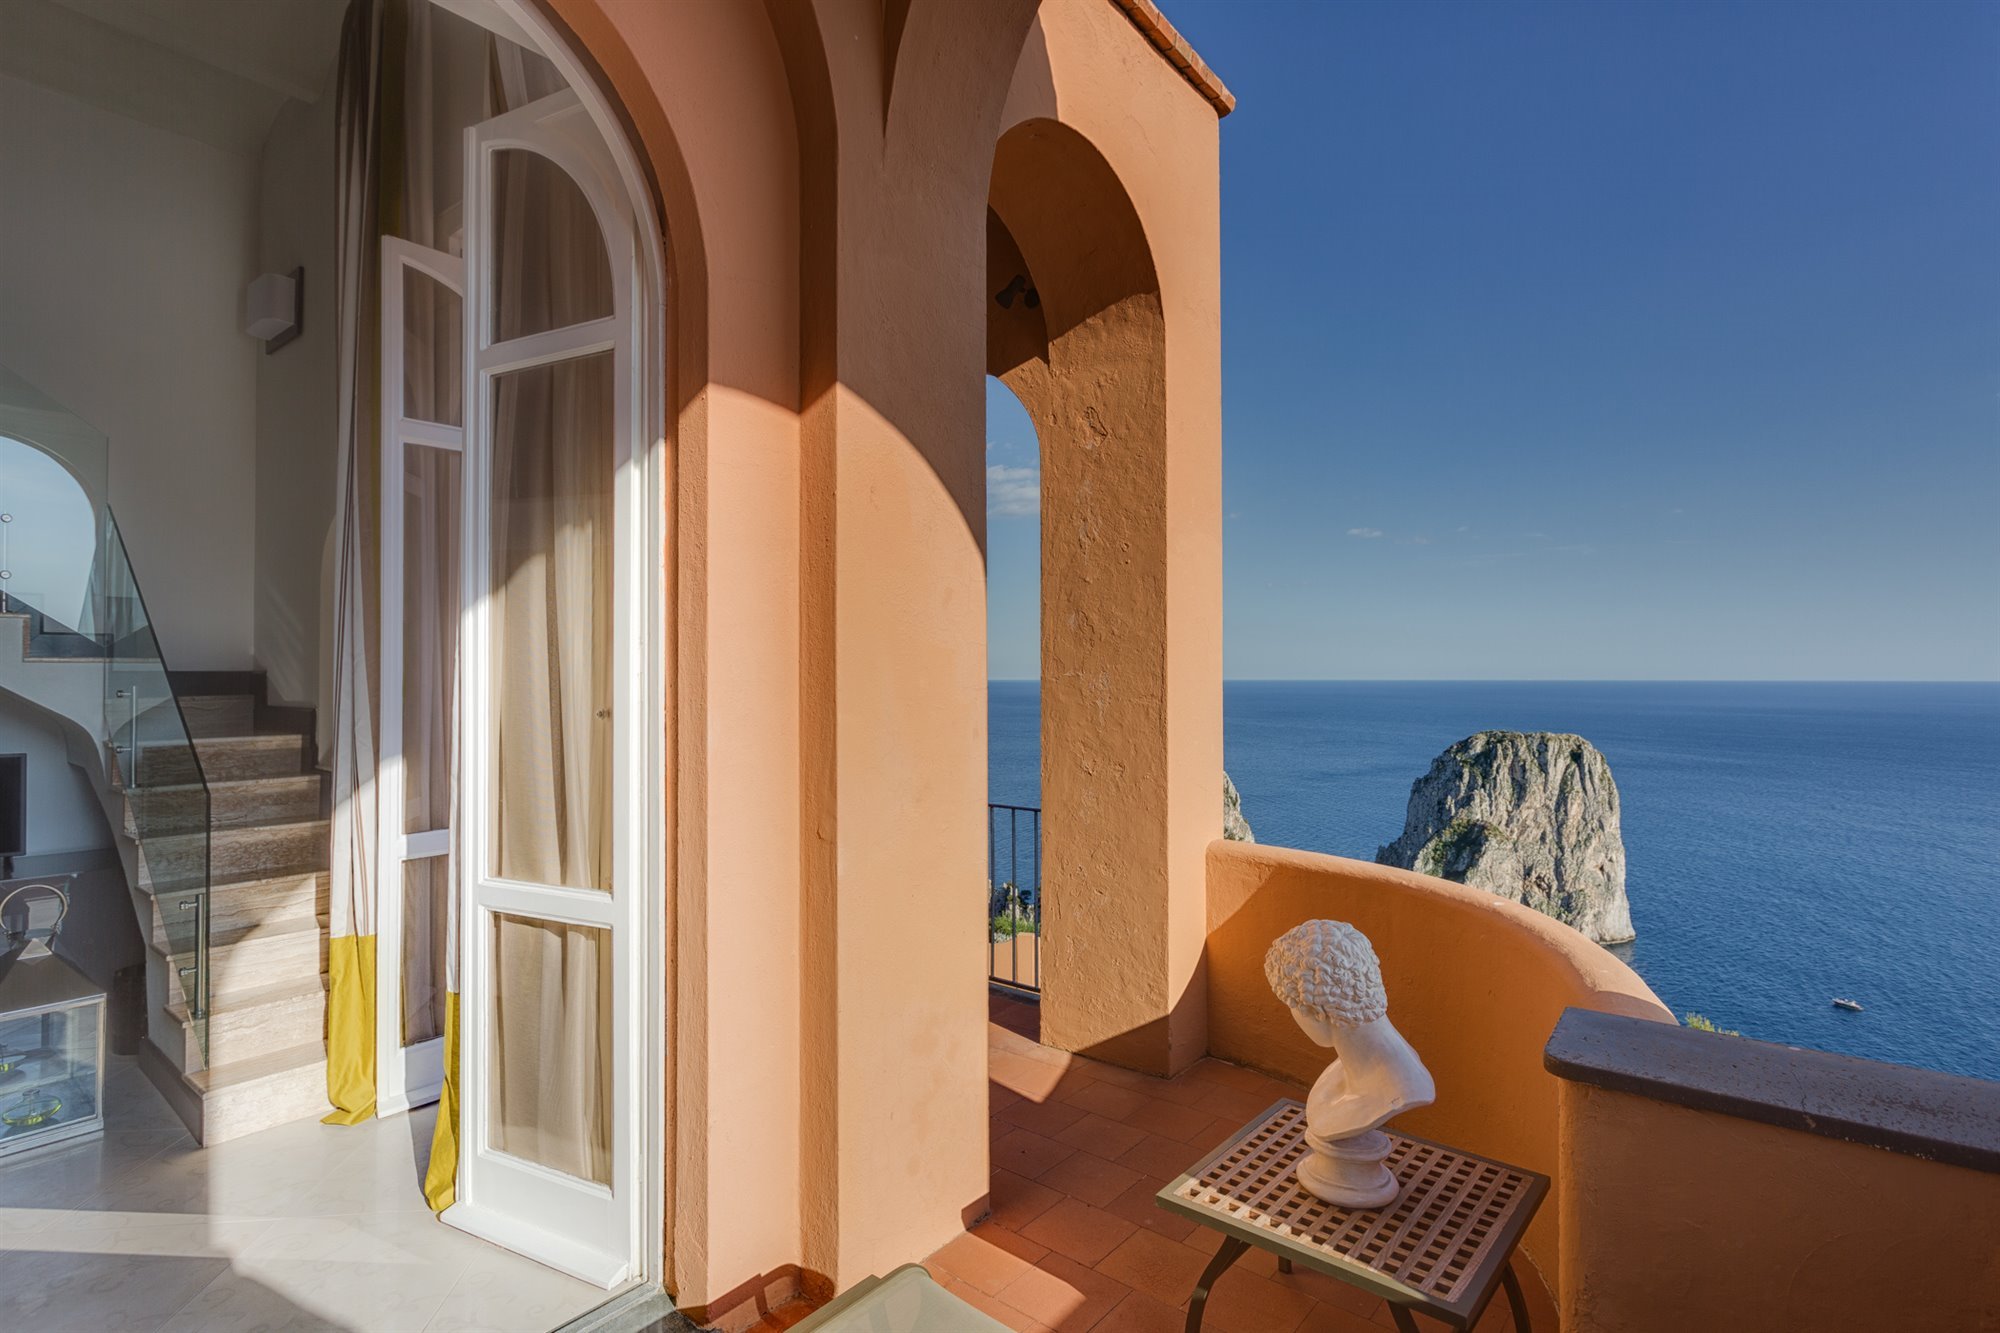 Hotel punta Tragara en Capri de lE Corbusier terraza con estatua